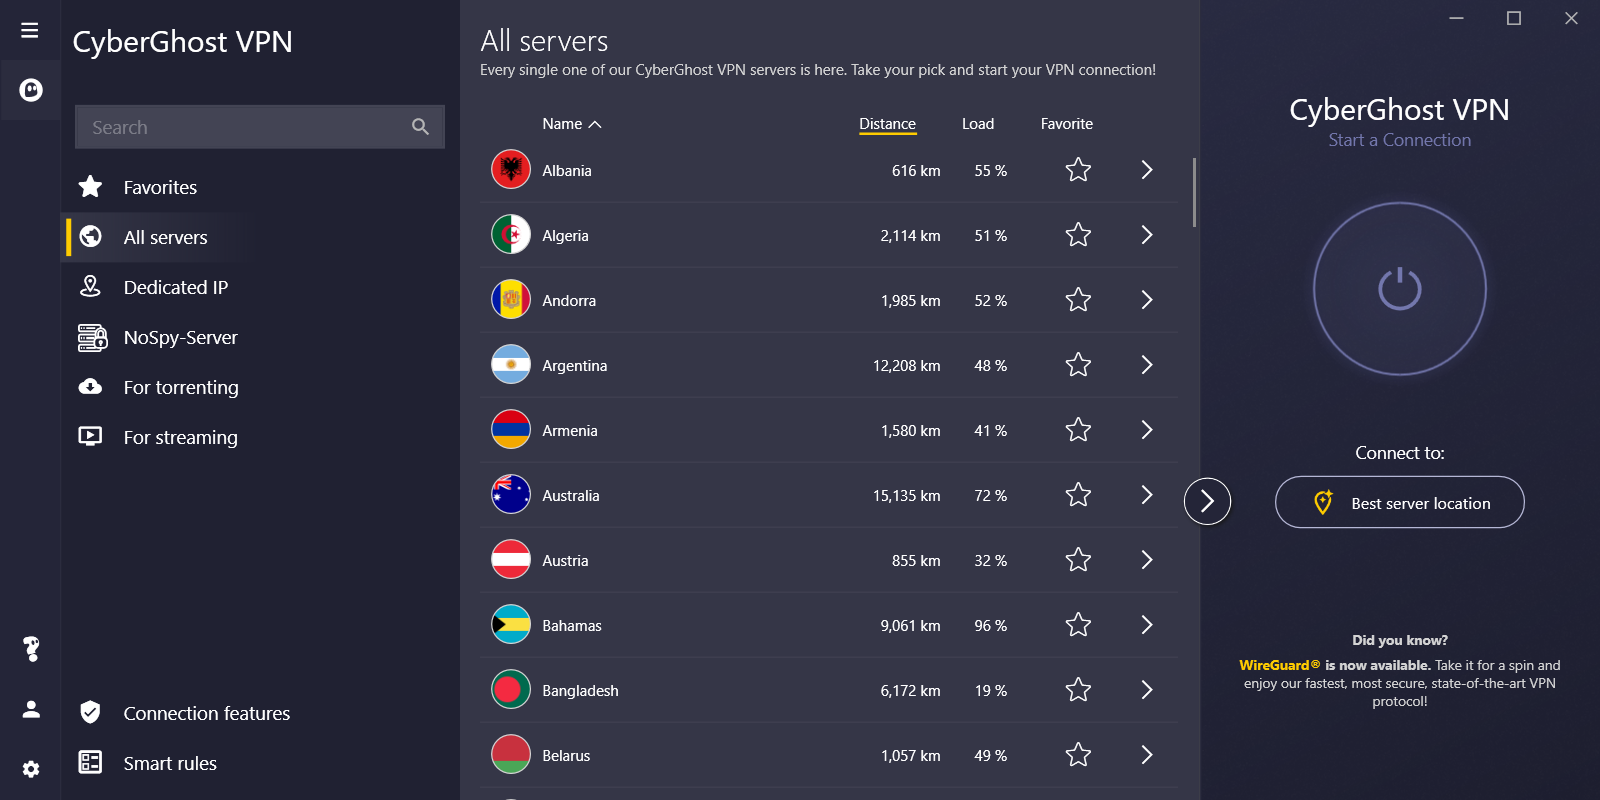 Schermata dell'app CyberGhost VPN per Windows che mostra un'ampia selezione di server